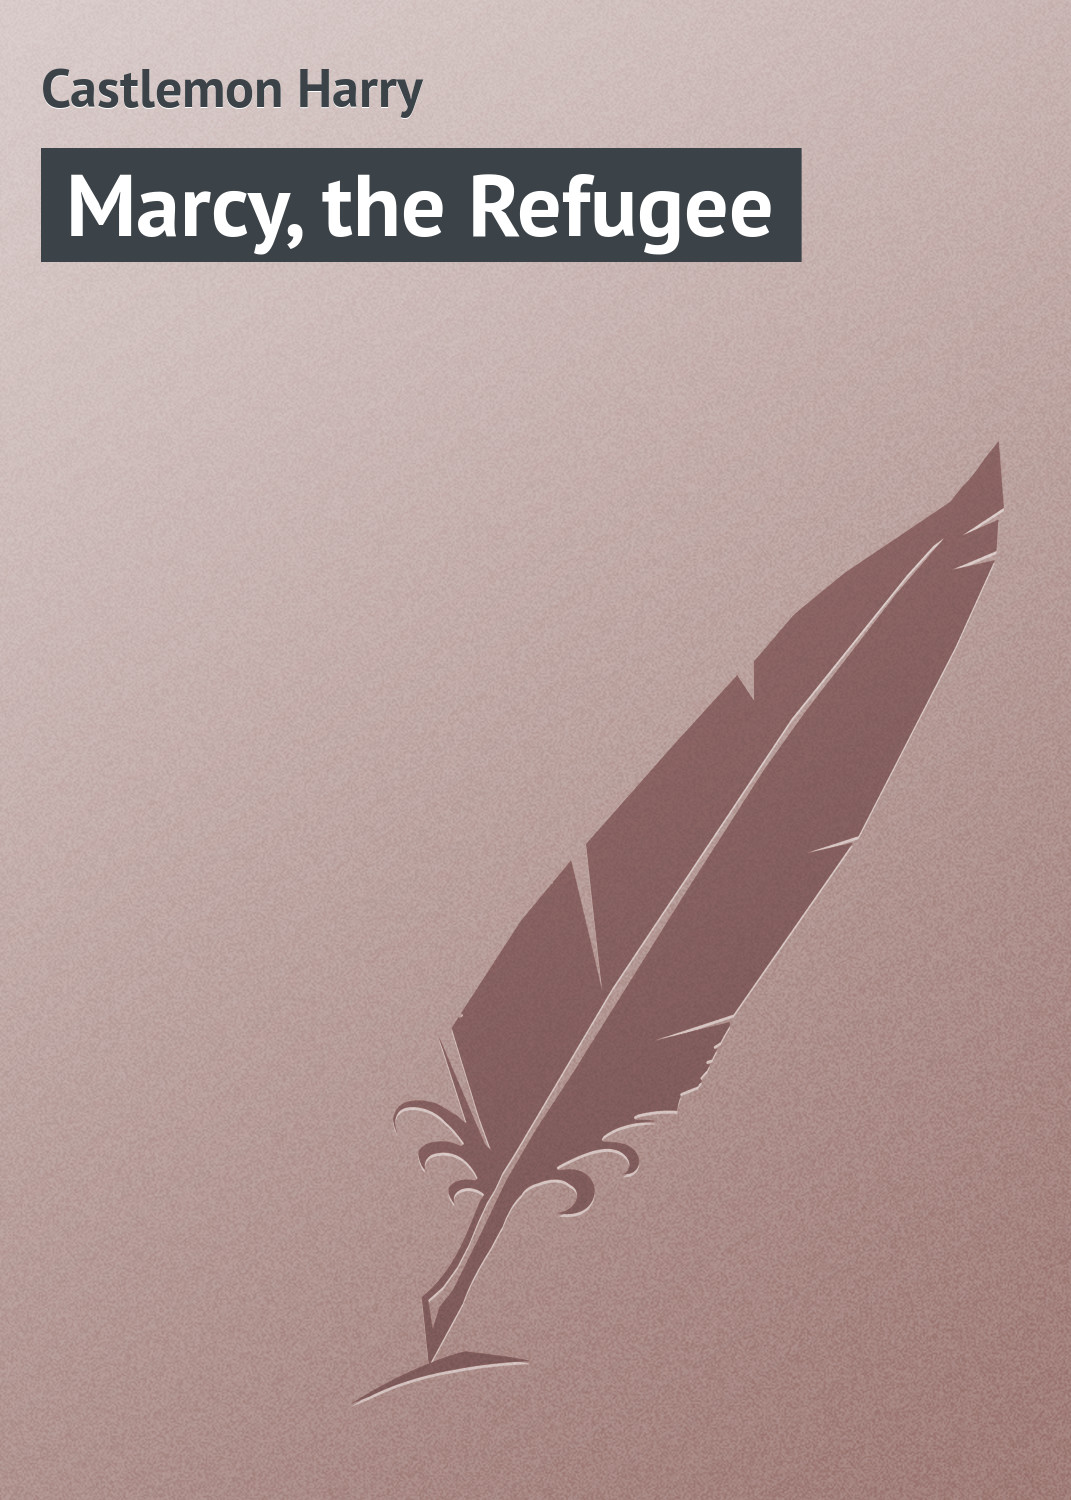 Книга Marcy, the Refugee из серии , созданная Harry Castlemon, может относится к жанру Зарубежная классика, Зарубежные детские книги. Стоимость электронной книги Marcy, the Refugee с идентификатором 23166931 составляет 5.99 руб.